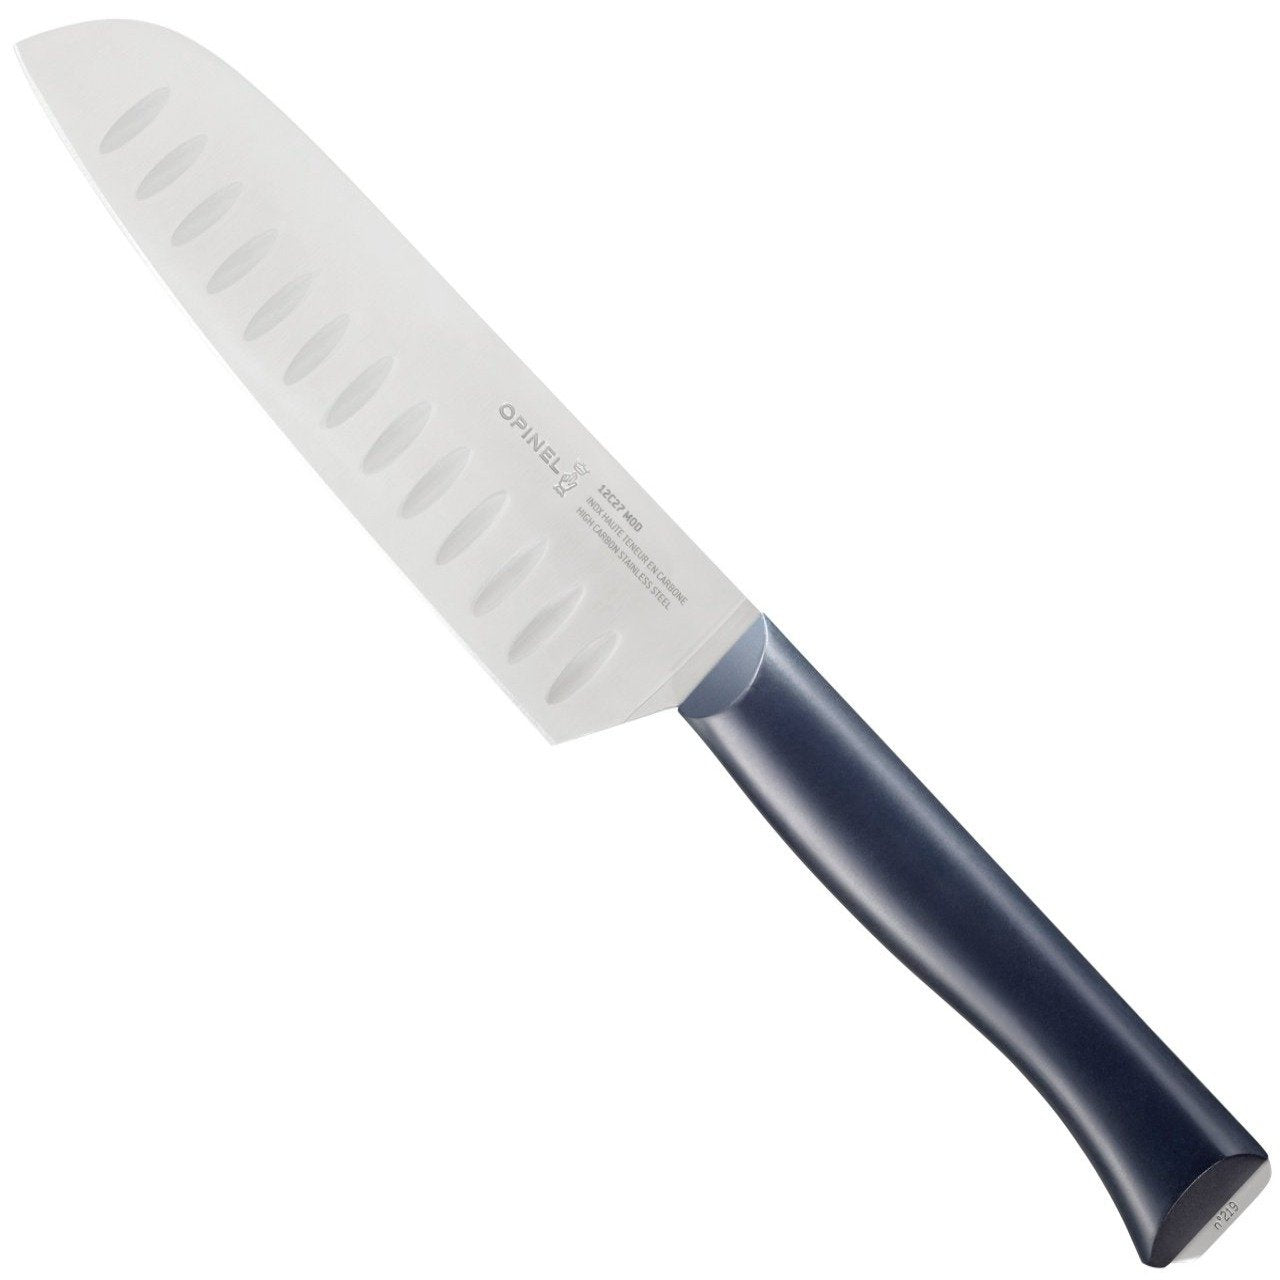 Opinel N.219 Intempora Multi-Purpose Santoku Knife + Free Sharpener